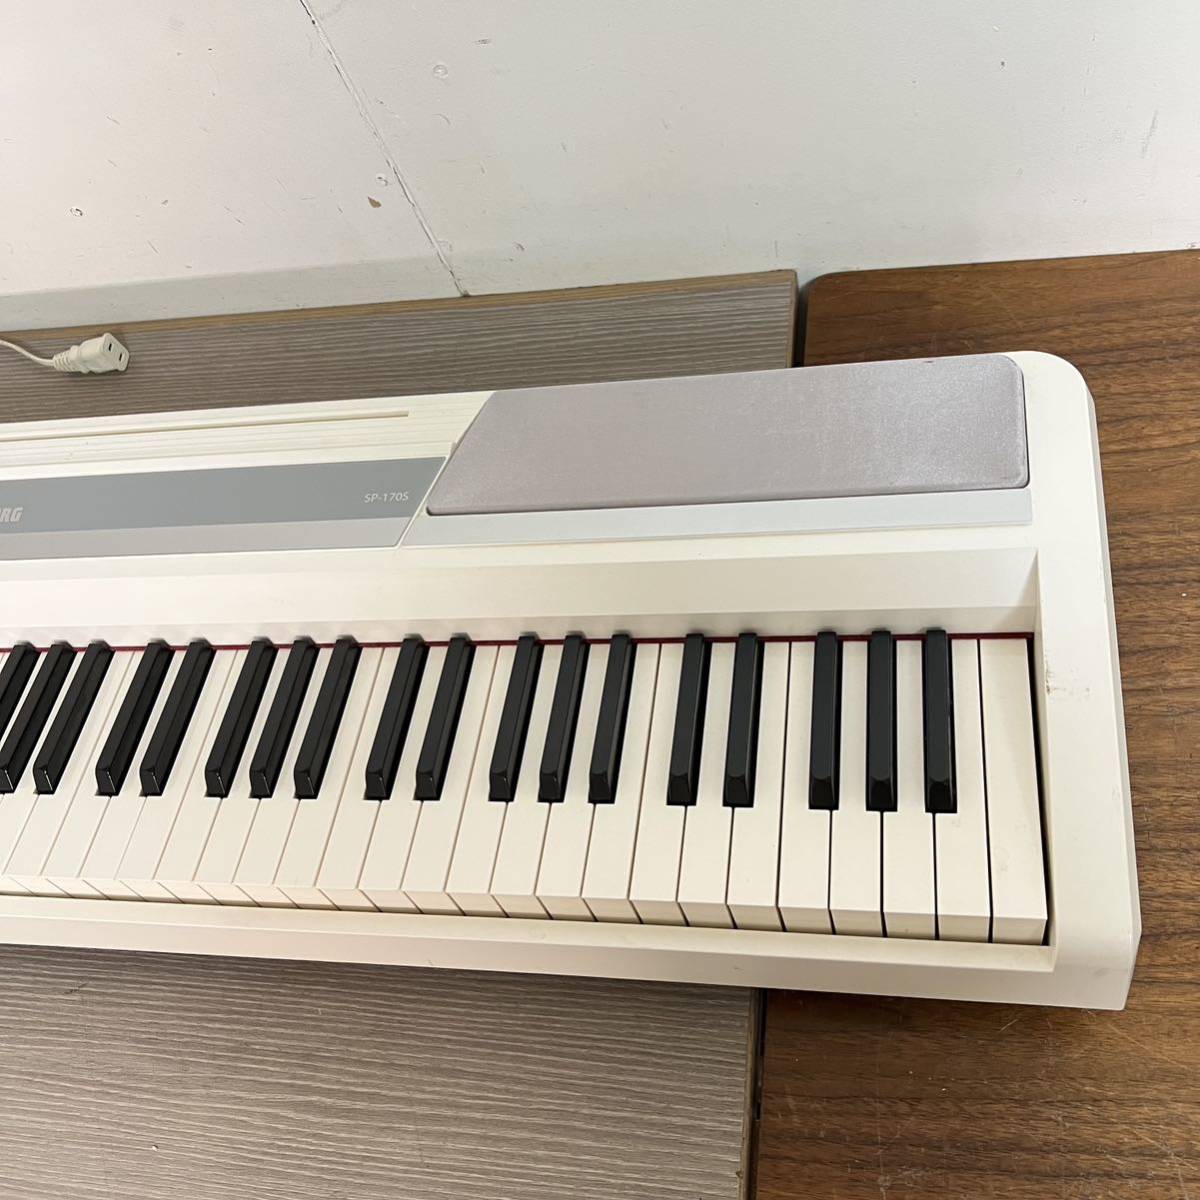 B1642 コルグKORG SP-170S 電子ピアノ 88鍵 ホワイトグレー_画像2